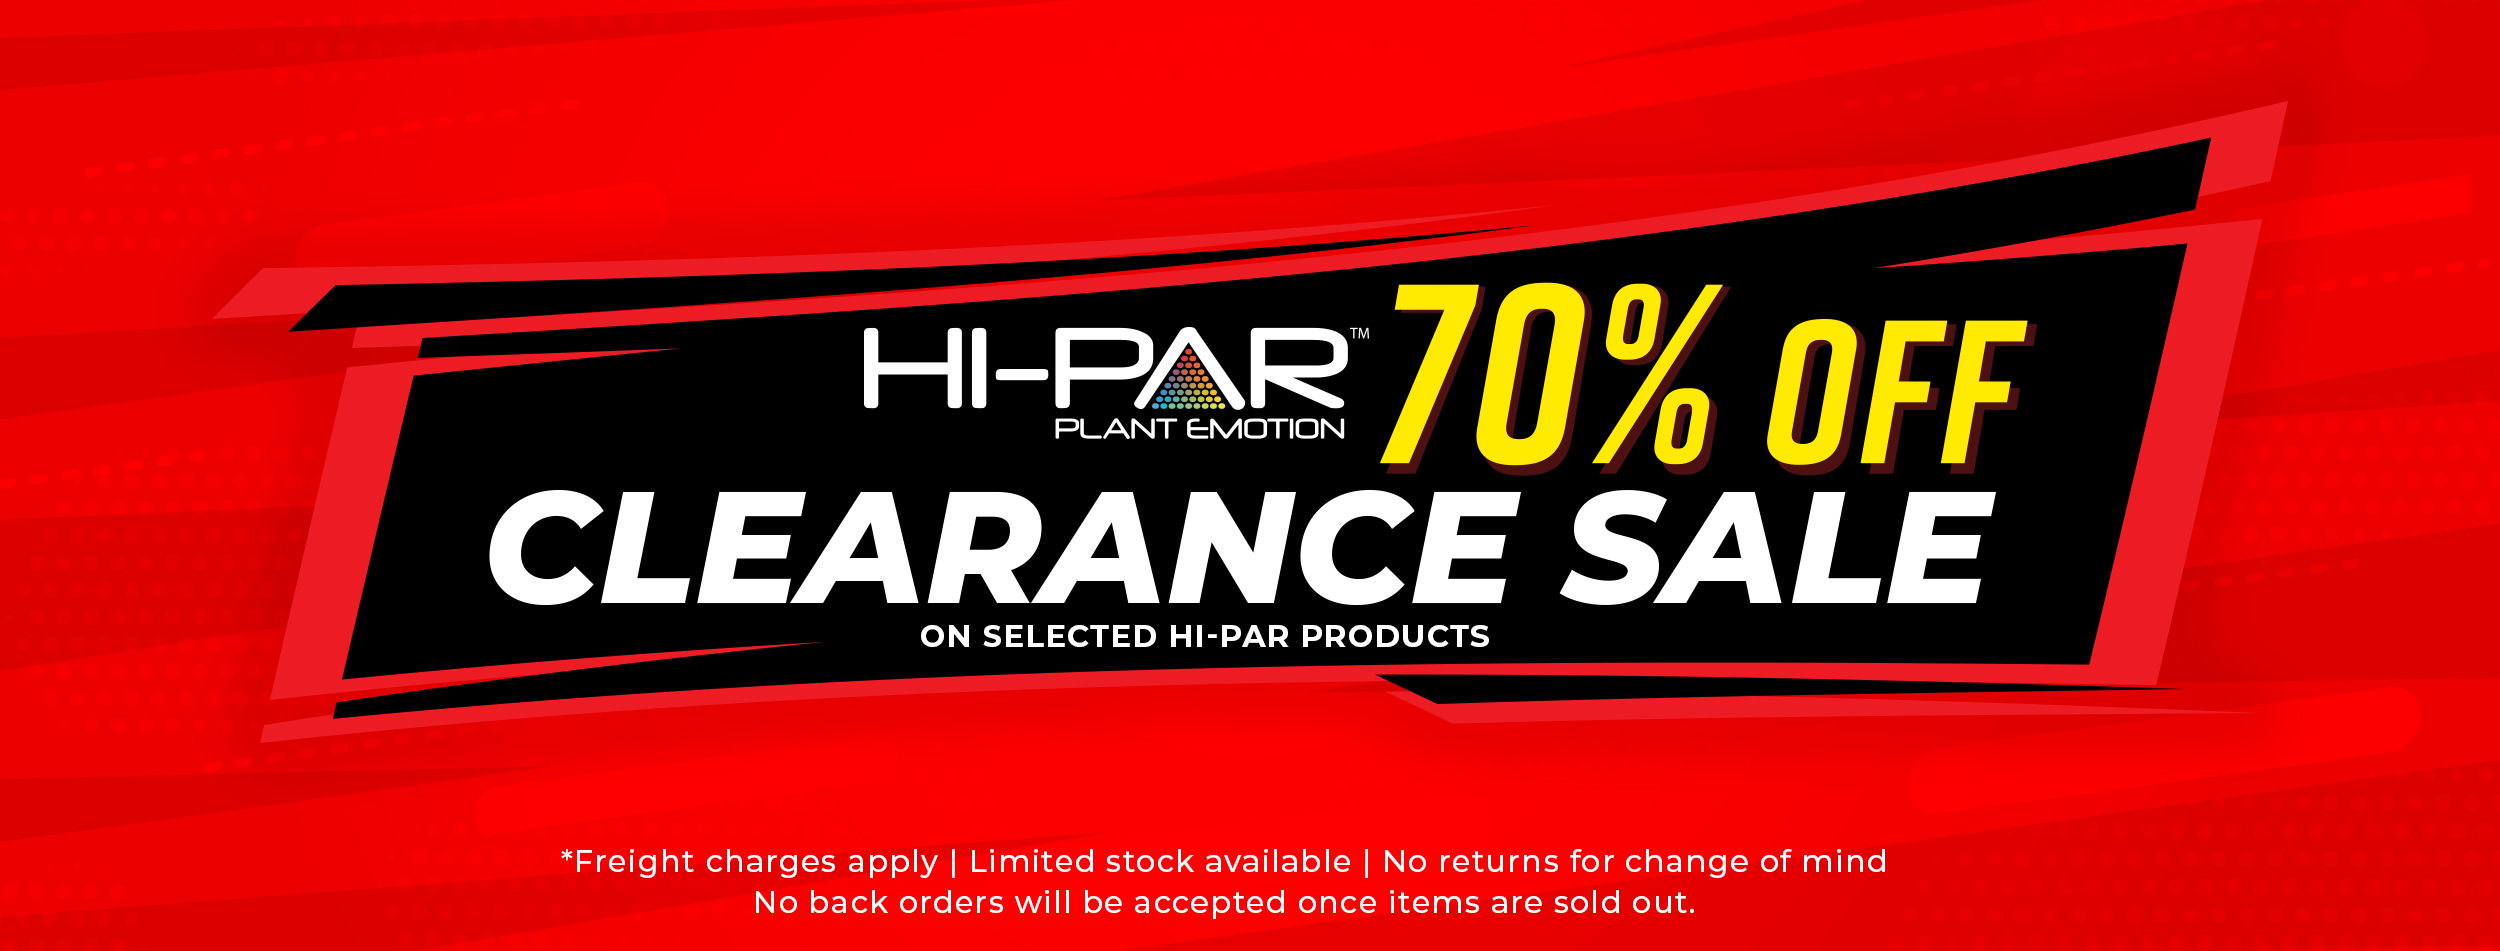 HI-PAR Clearance Sale - Get 70% Off on Selected Hi